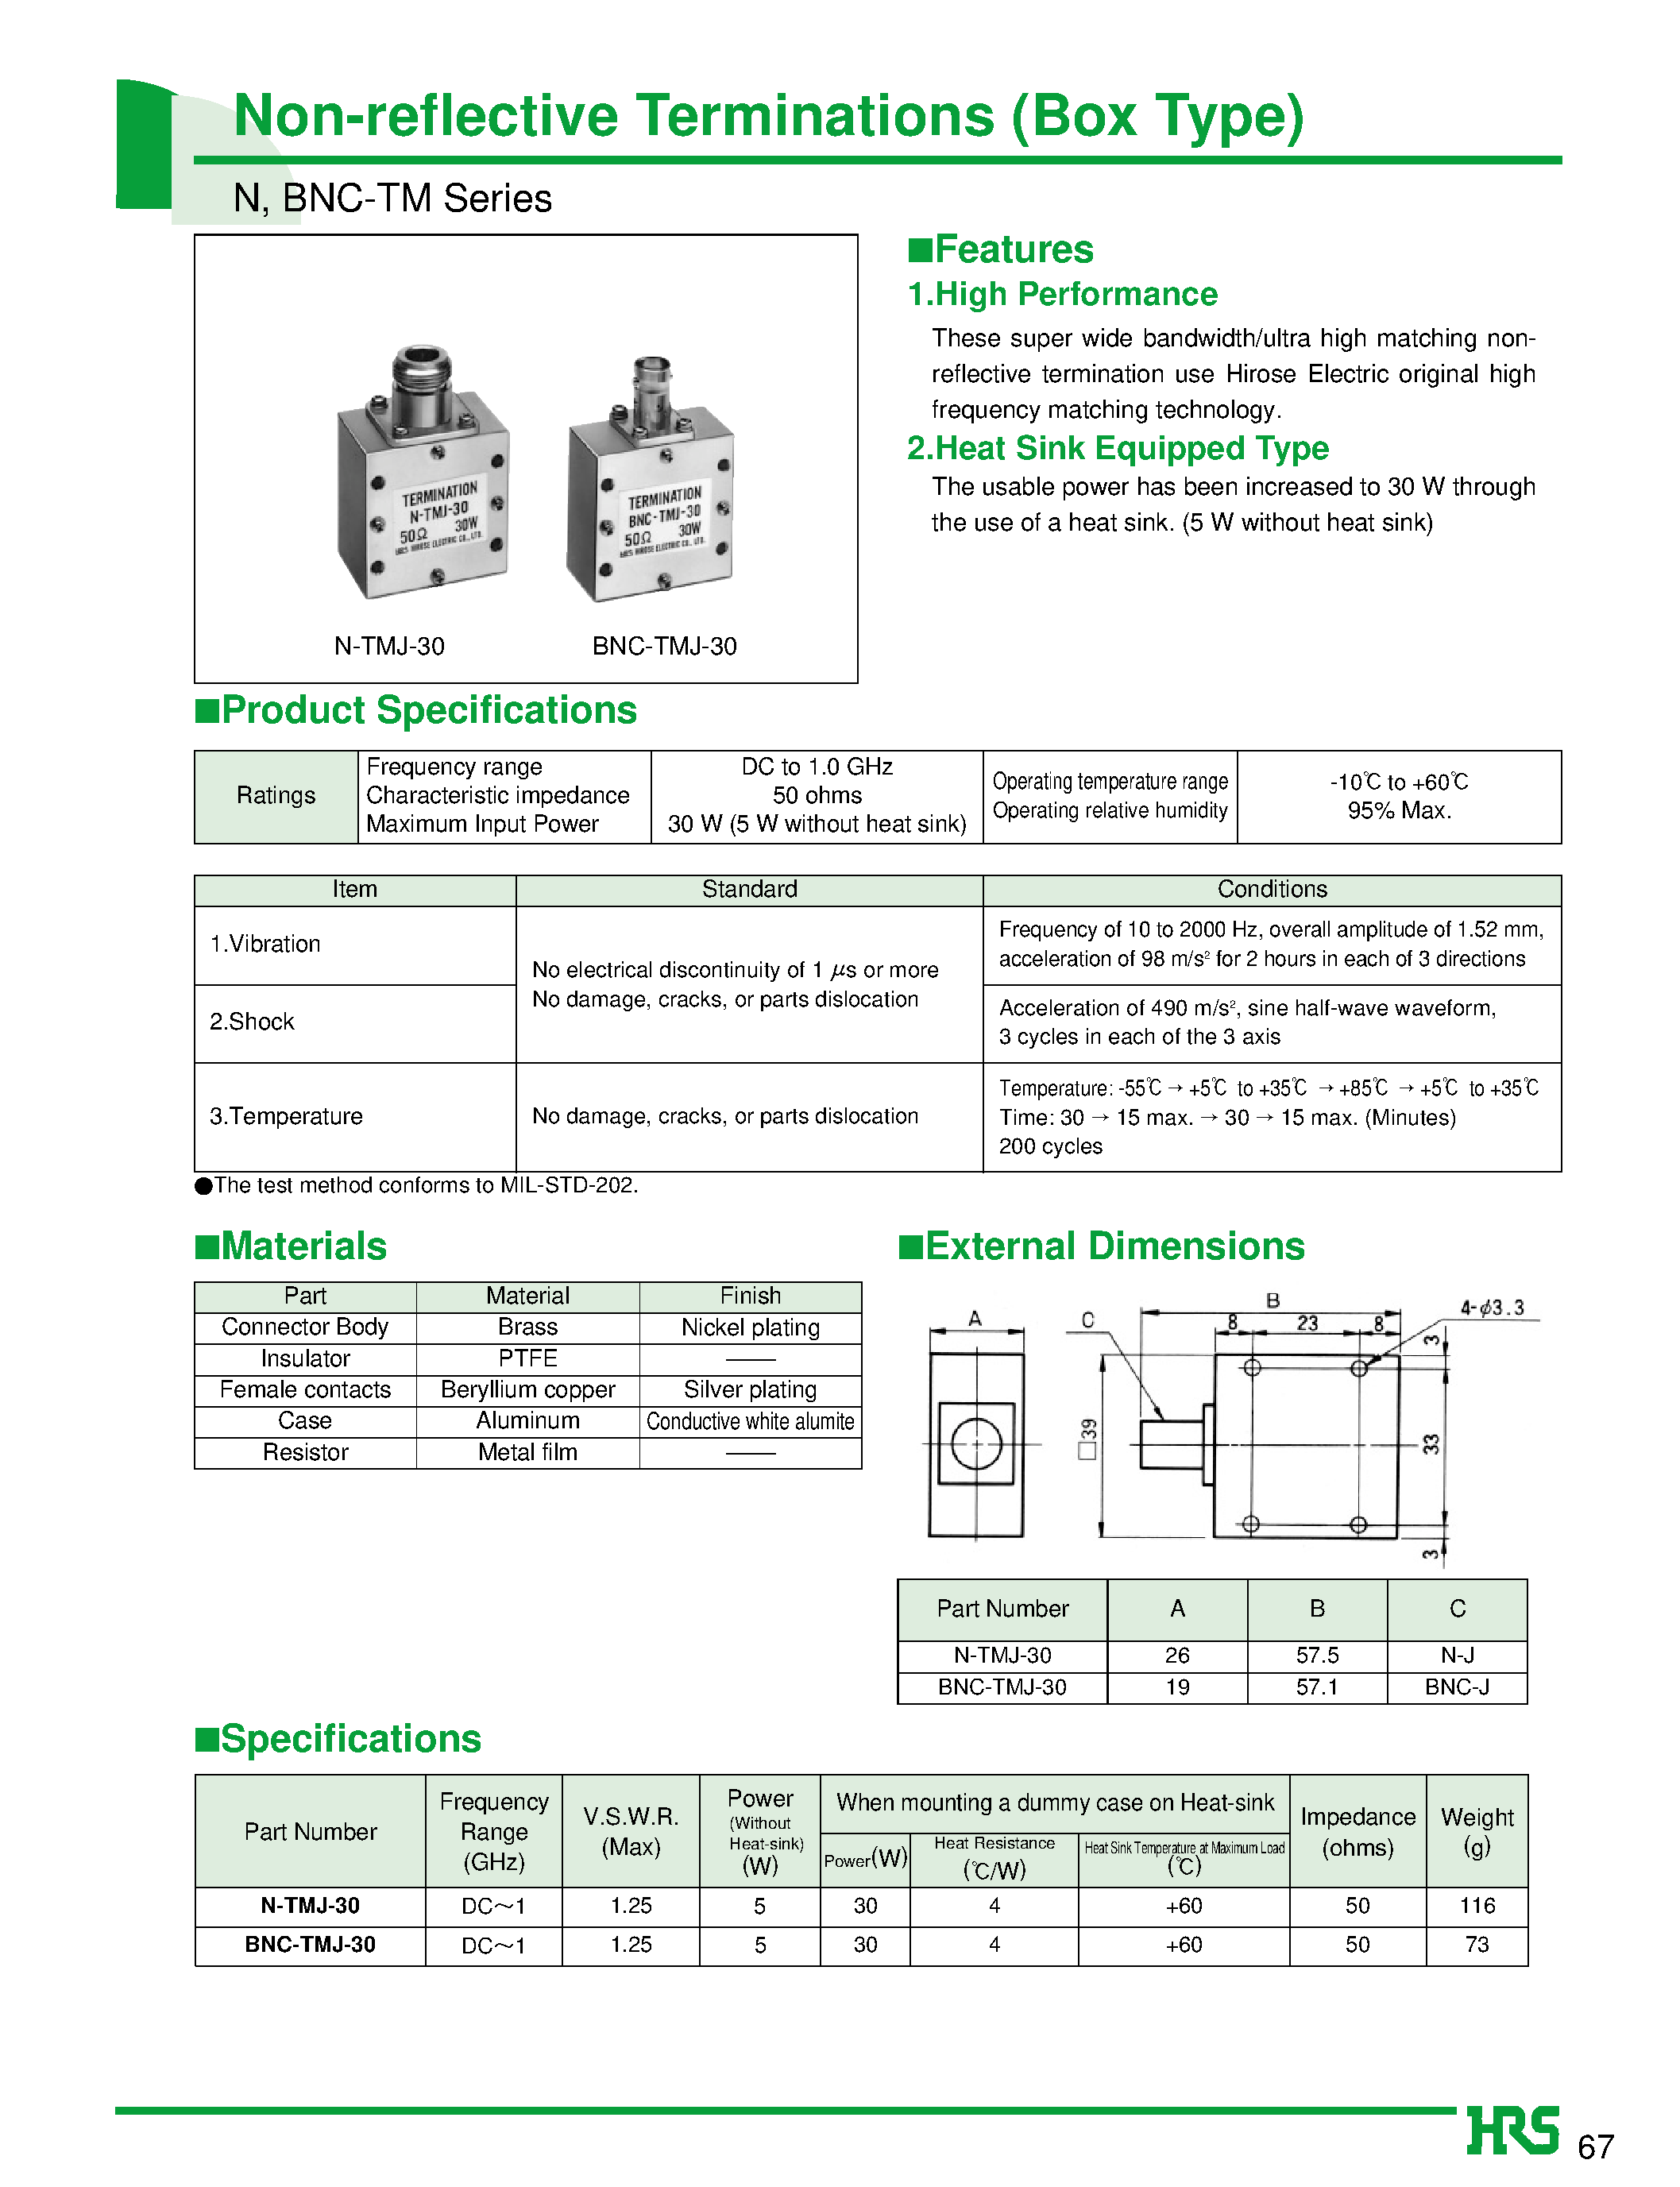 Даташит BNC-TMJ-30 - Non-reflective Terminations (Box Type) страница 1